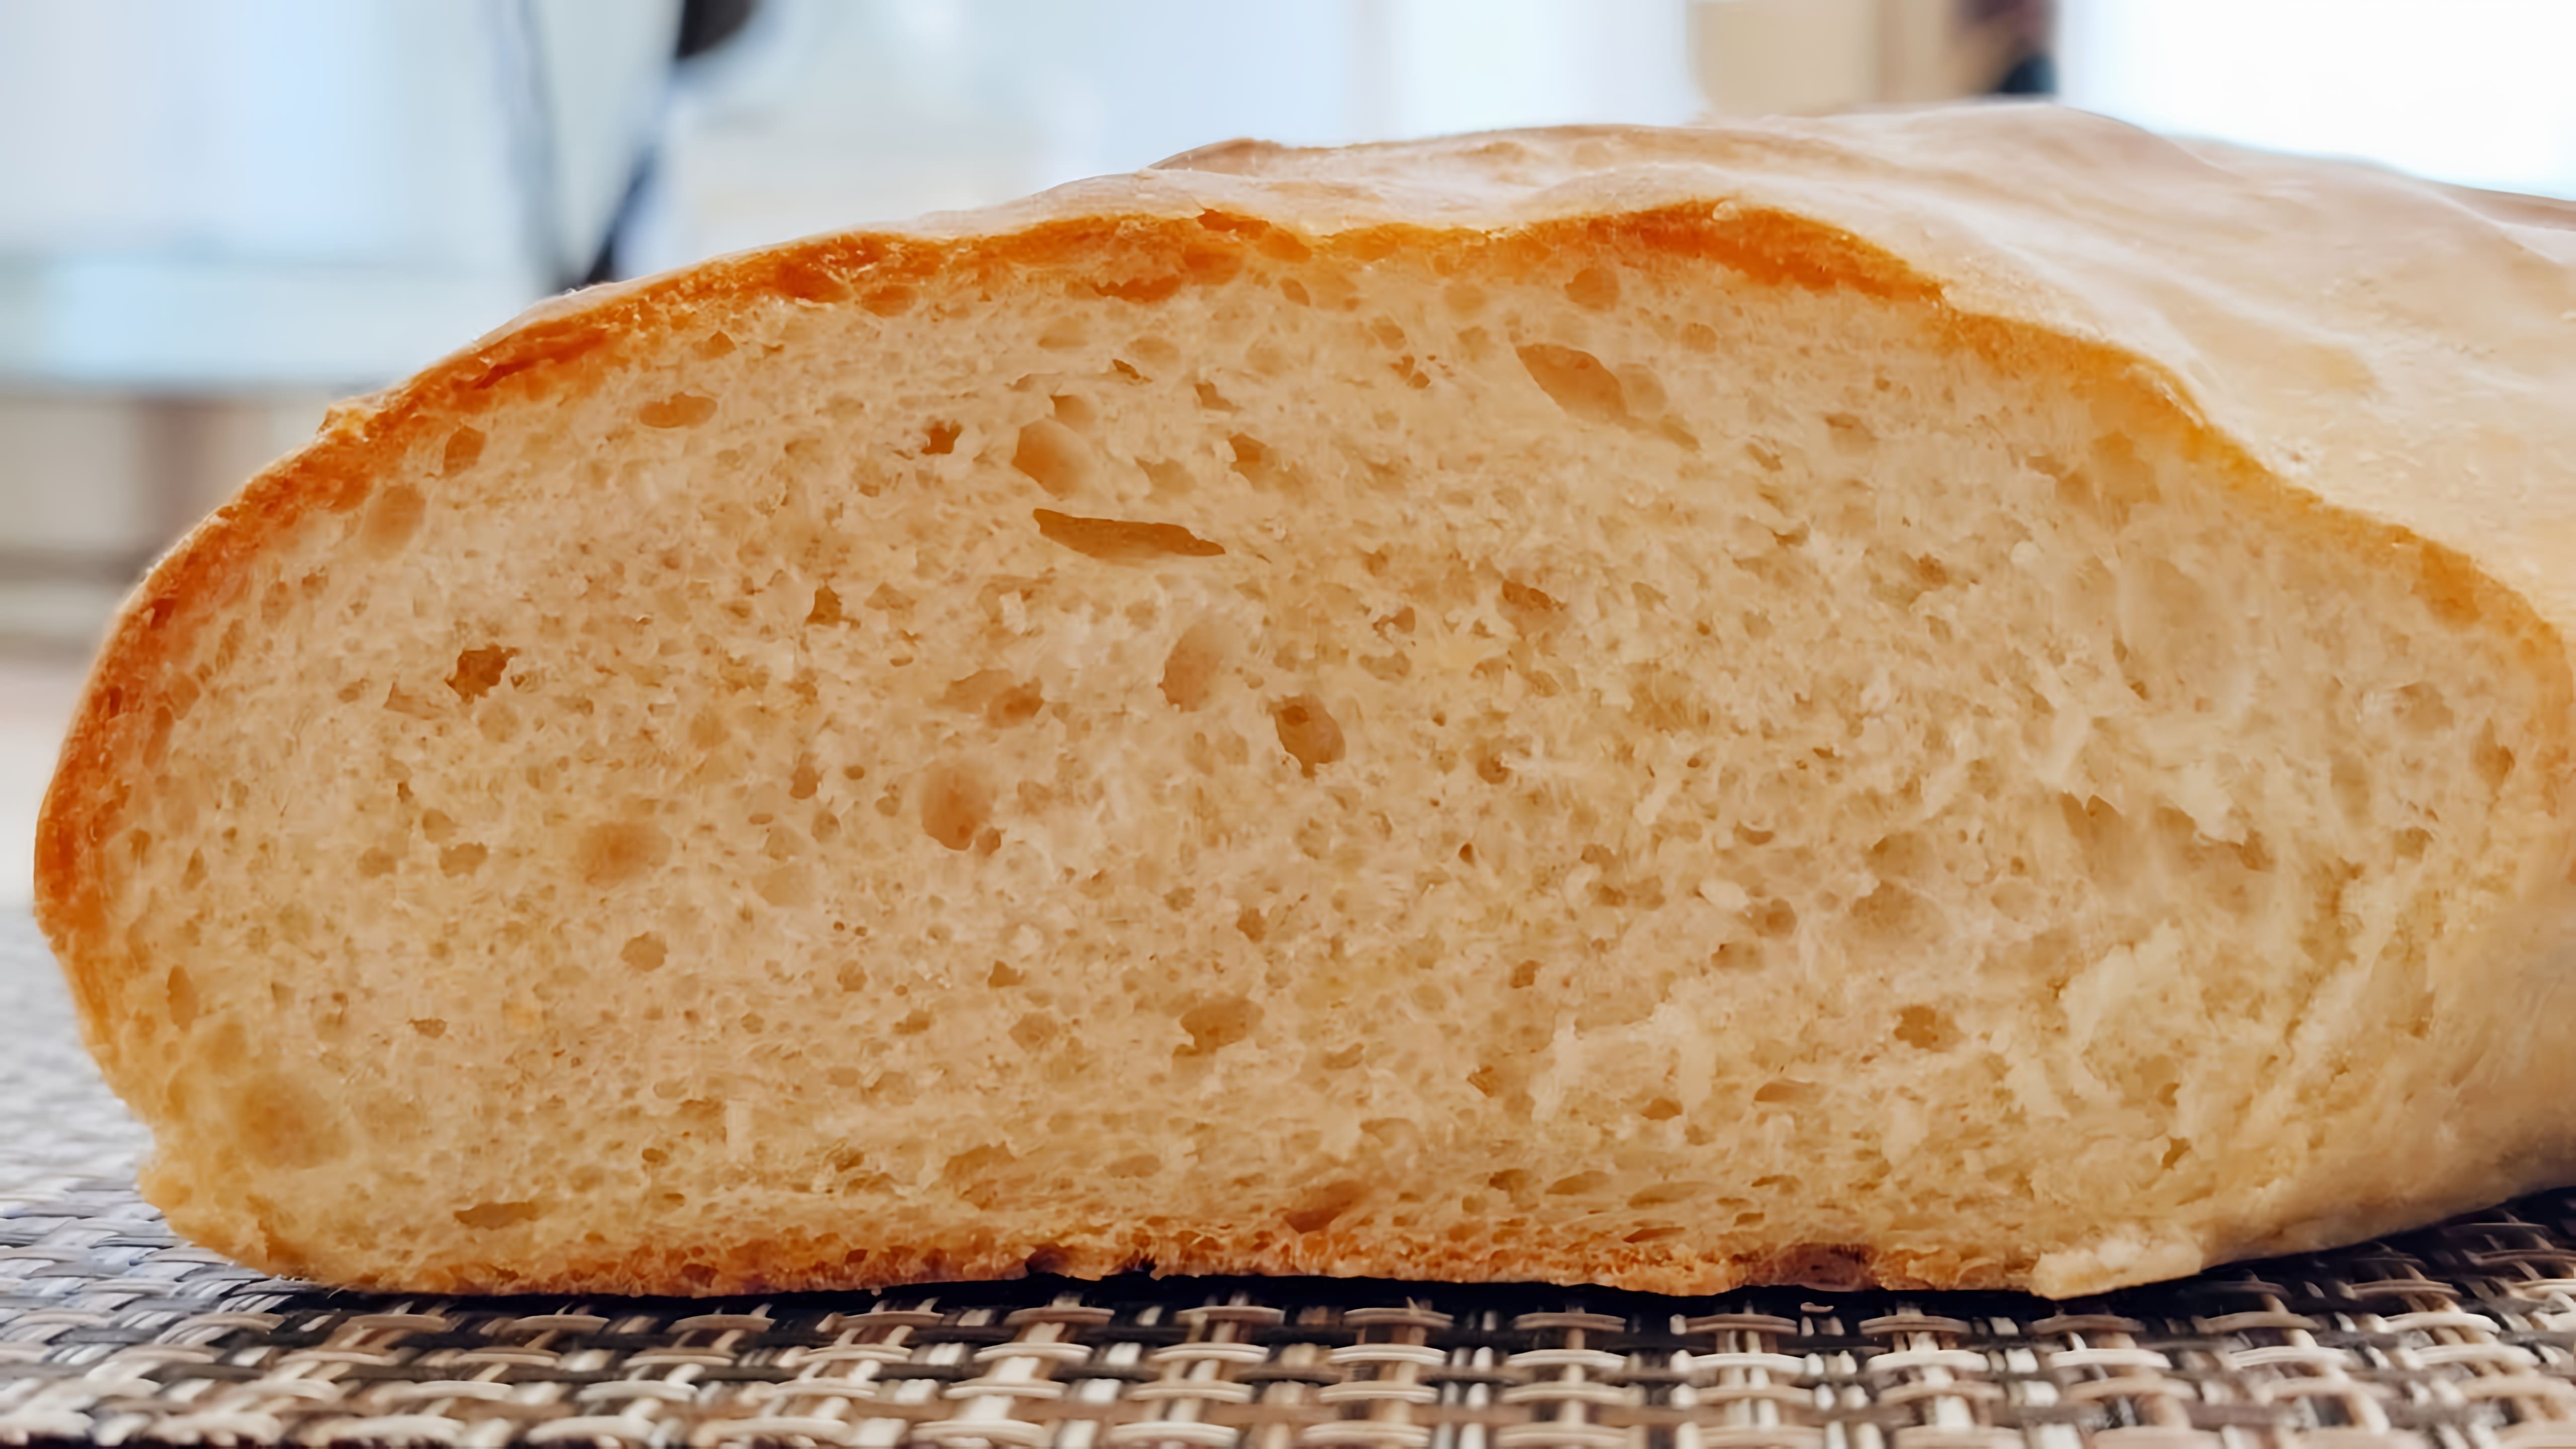 домашний хлеб это всегда очень полезно и вкусно. показываю свой рецепт домашнего вкусного хлеба! получается... 